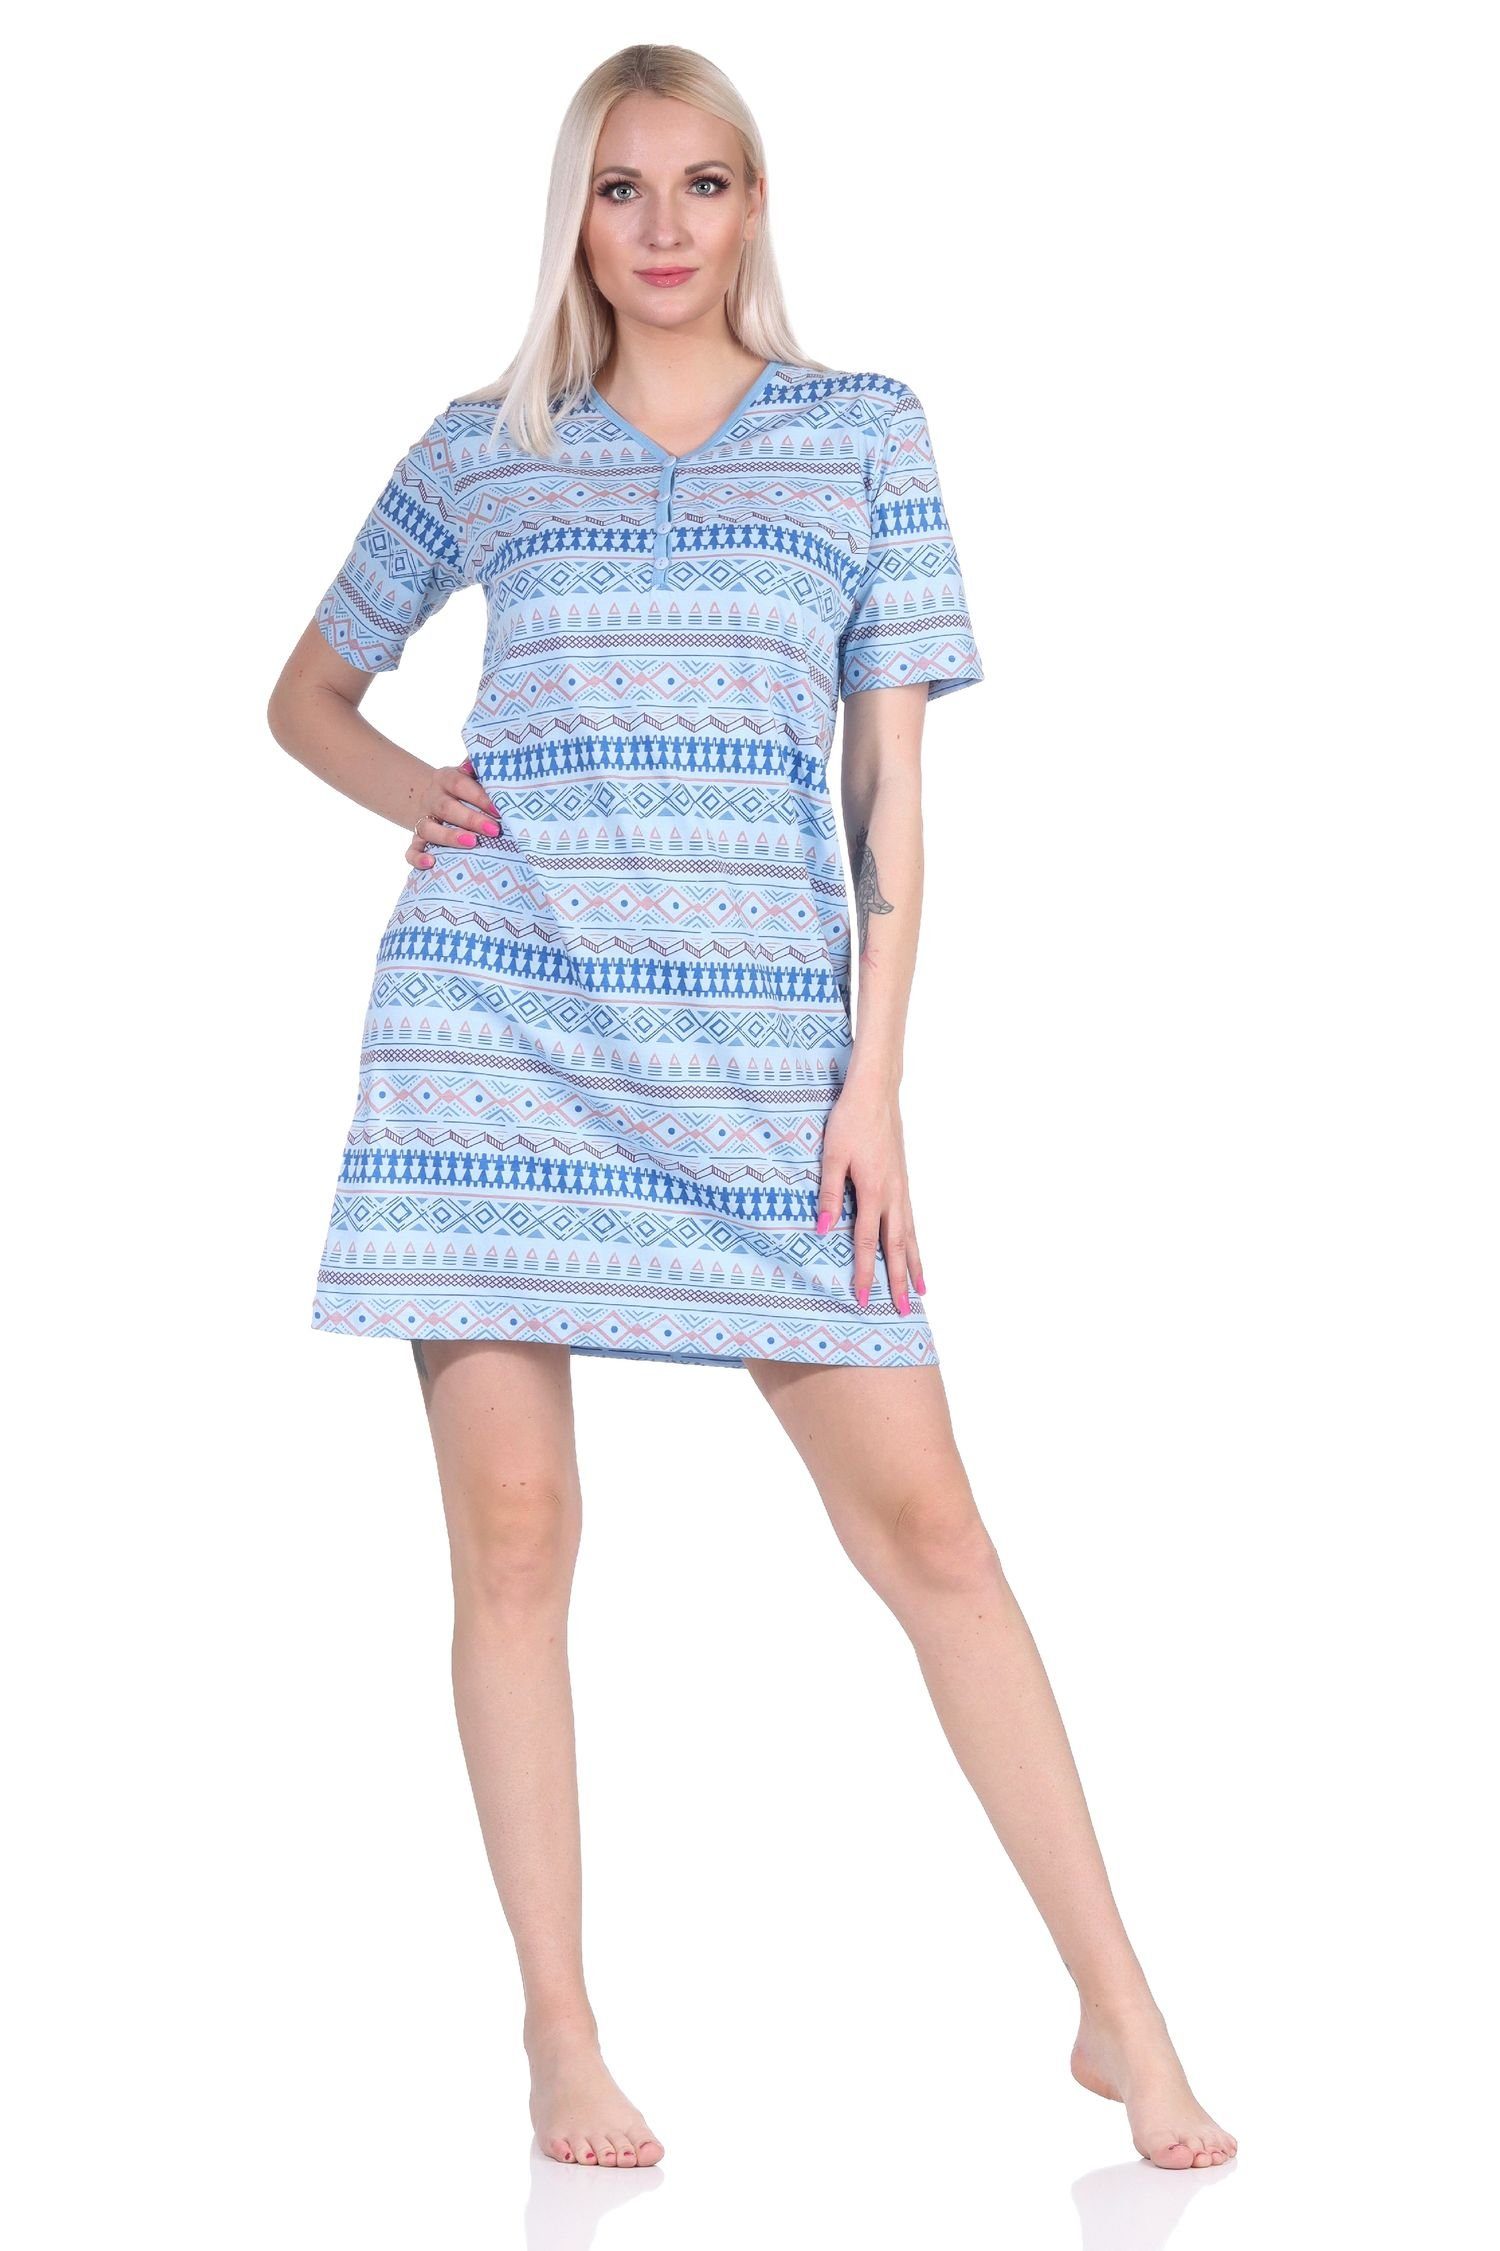 Normann Nachthemd Damen Nachthemd kurzarm im Ethnolook - auch in Übergrößen hellblau